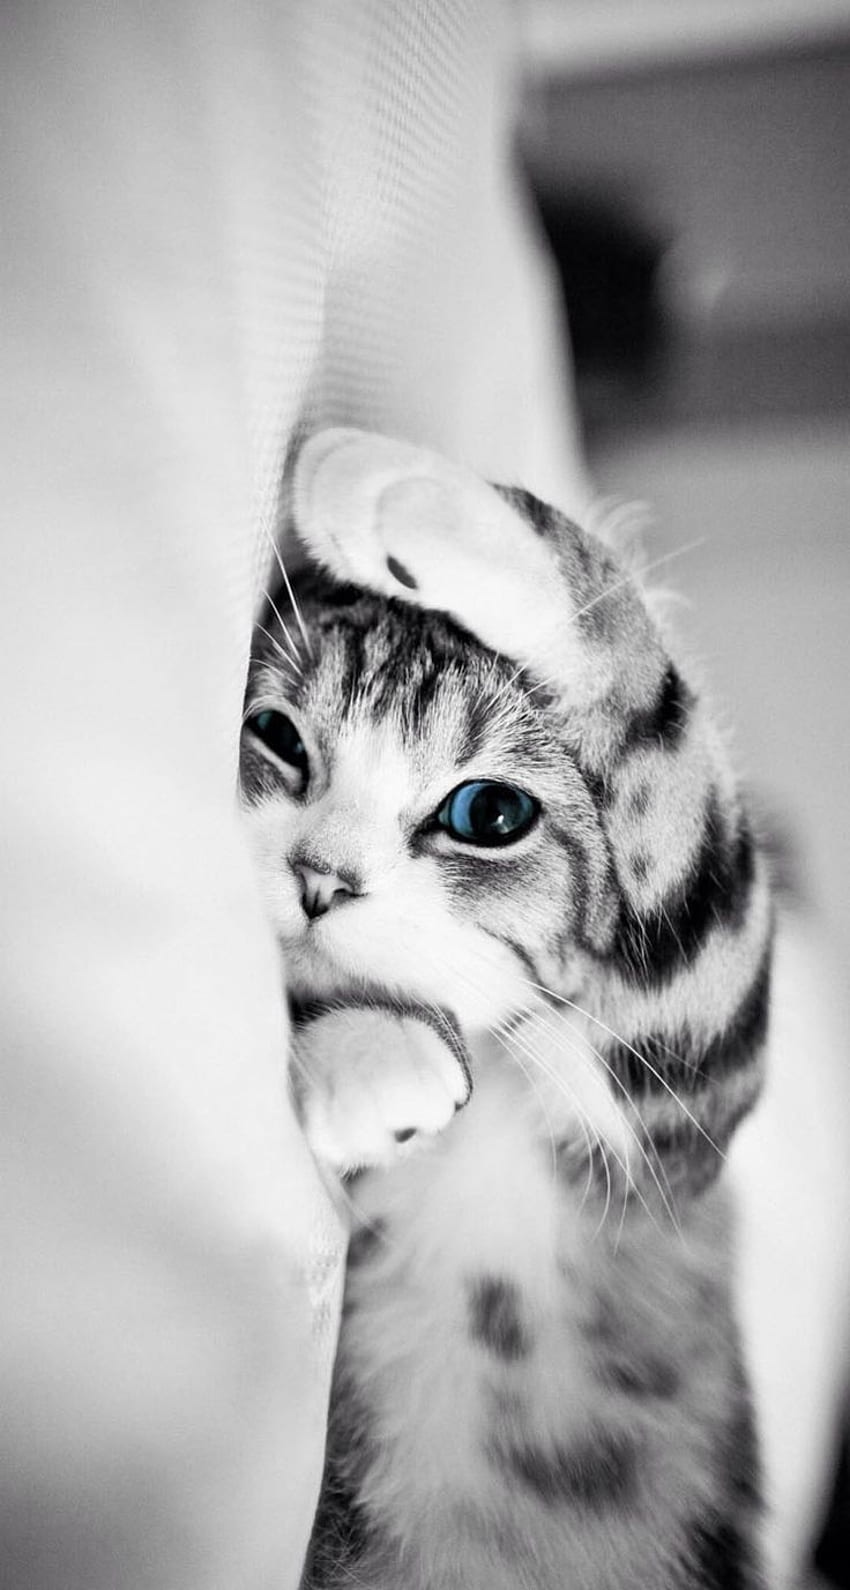 Cute Cat iPhone . Kucing cantik, Piaraan, Anak kucing lucu, Funny Cat HD phone wallpaper